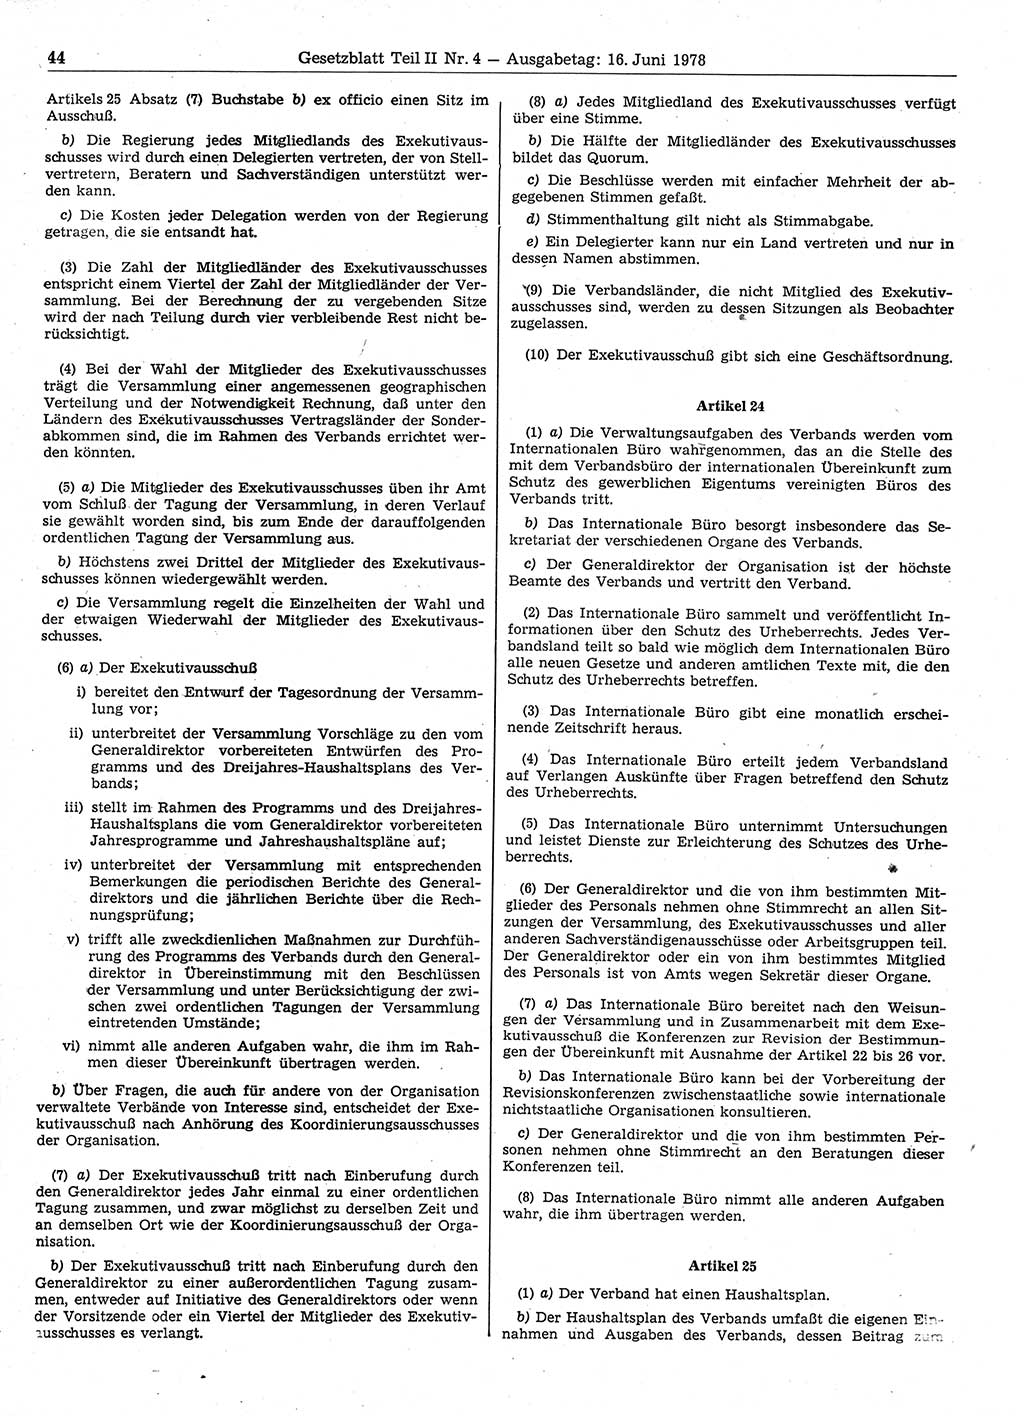 Gesetzblatt (GBl.) der Deutschen Demokratischen Republik (DDR) Teil ⅠⅠ 1978, Seite 44 (GBl. DDR ⅠⅠ 1978, S. 44)